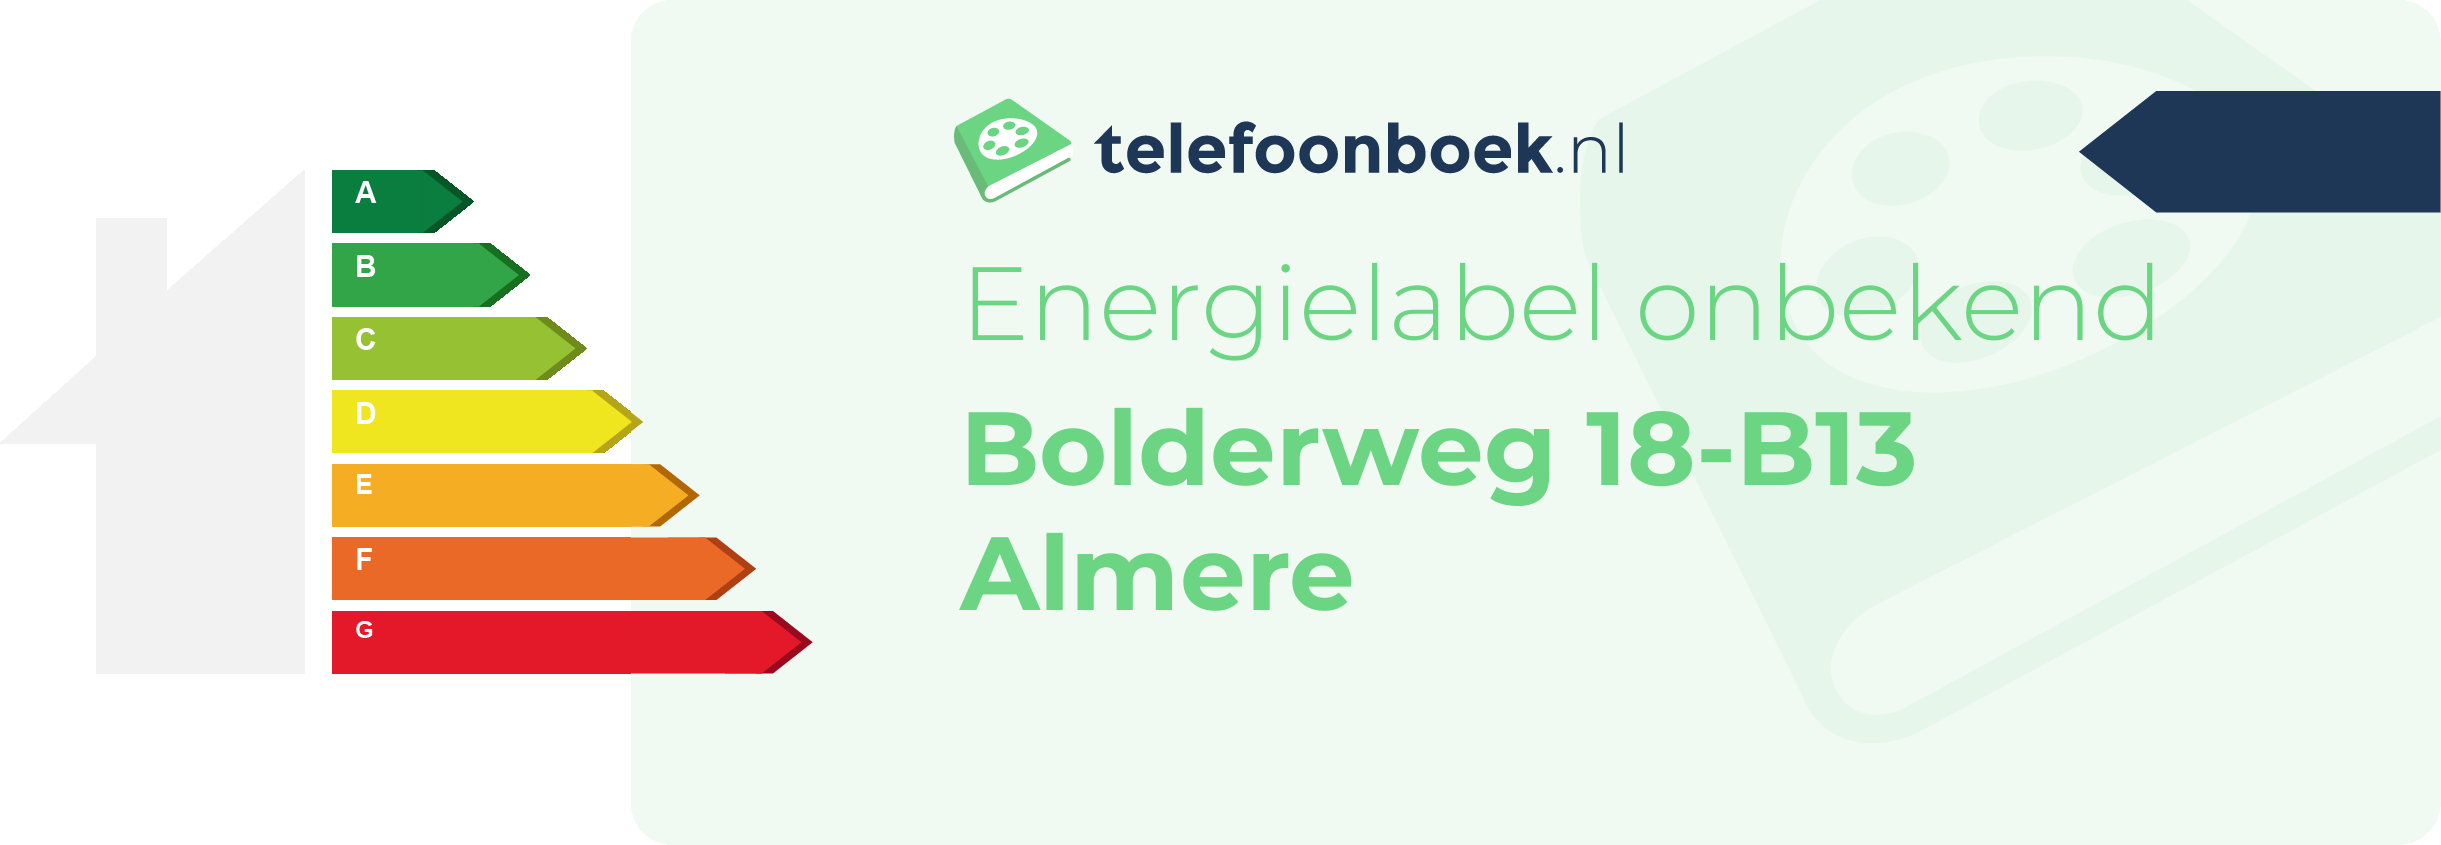 Energielabel Bolderweg 18-B13 Almere